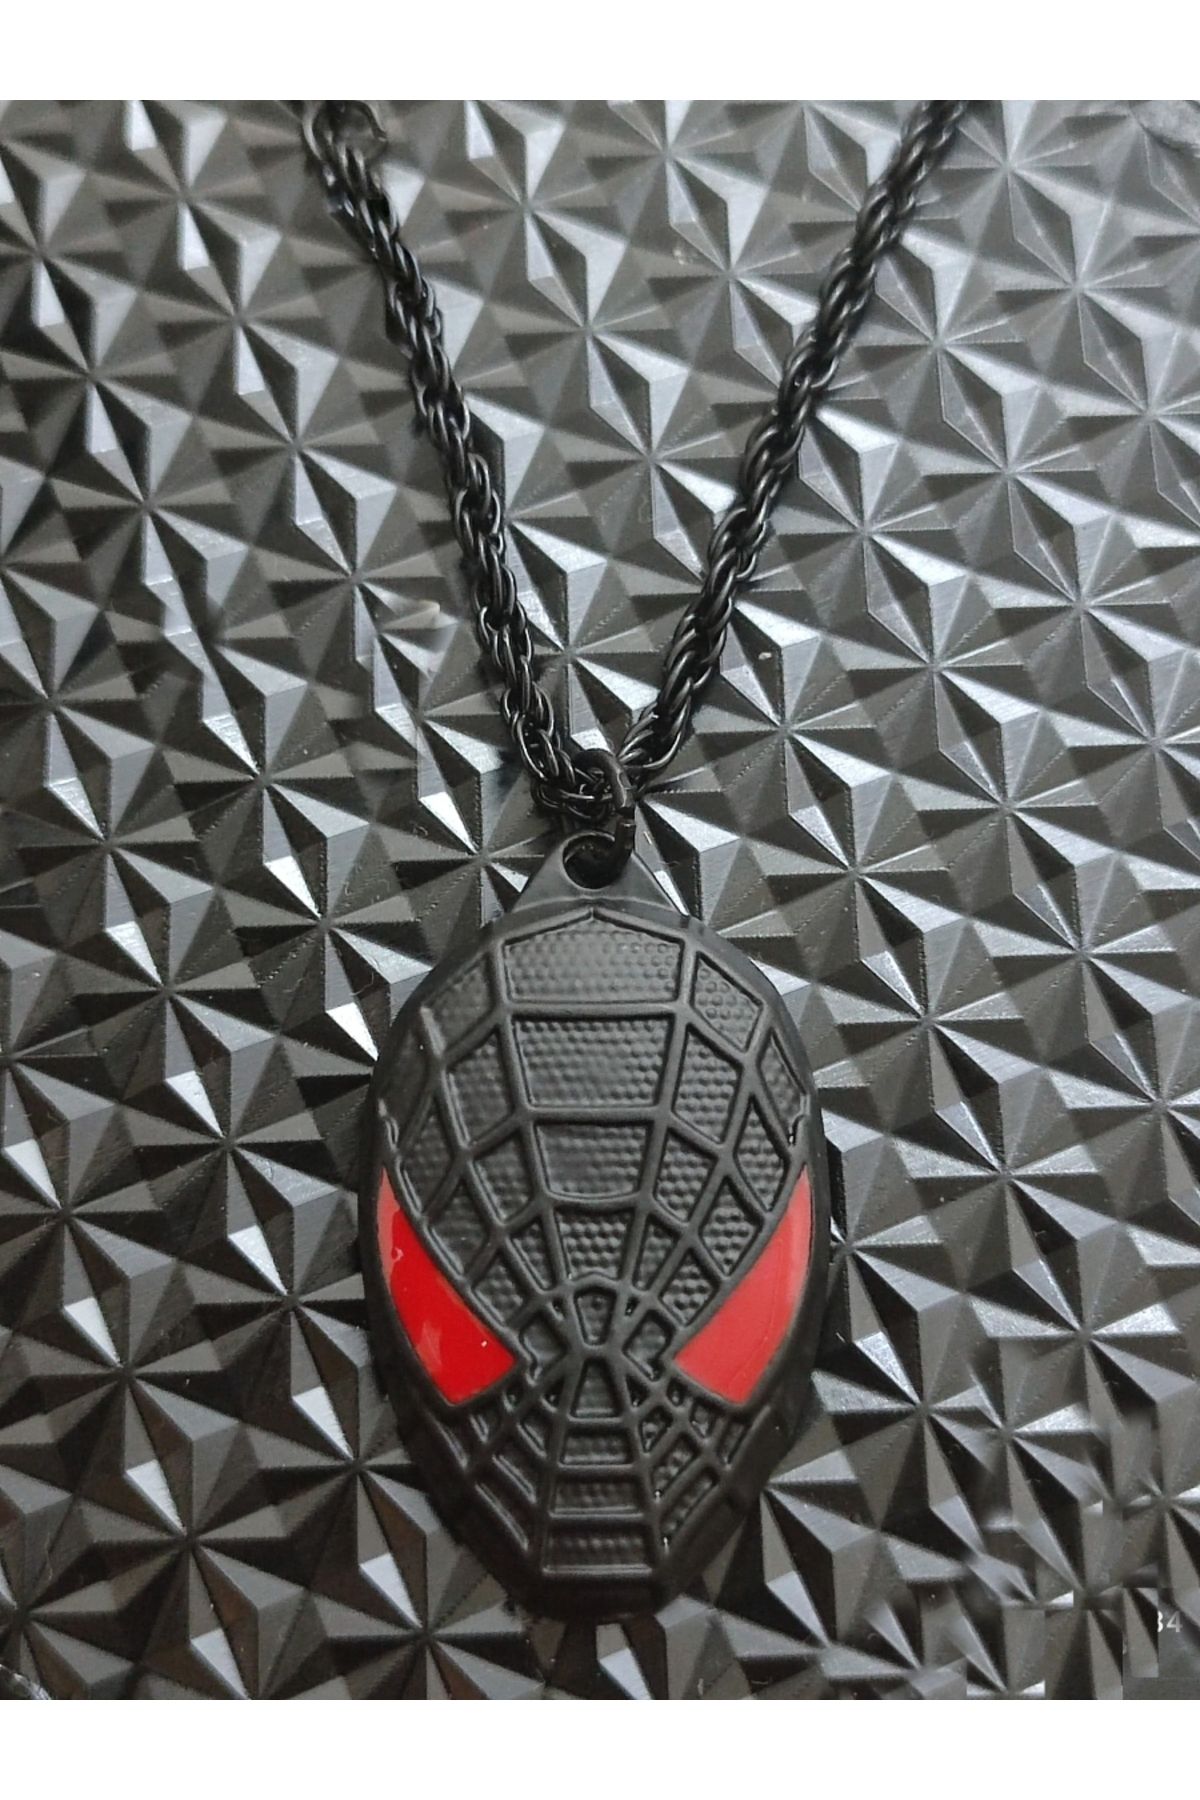 Black Point Örümcek Adam Spiderman 3 boyutlu çelik kolye hediye